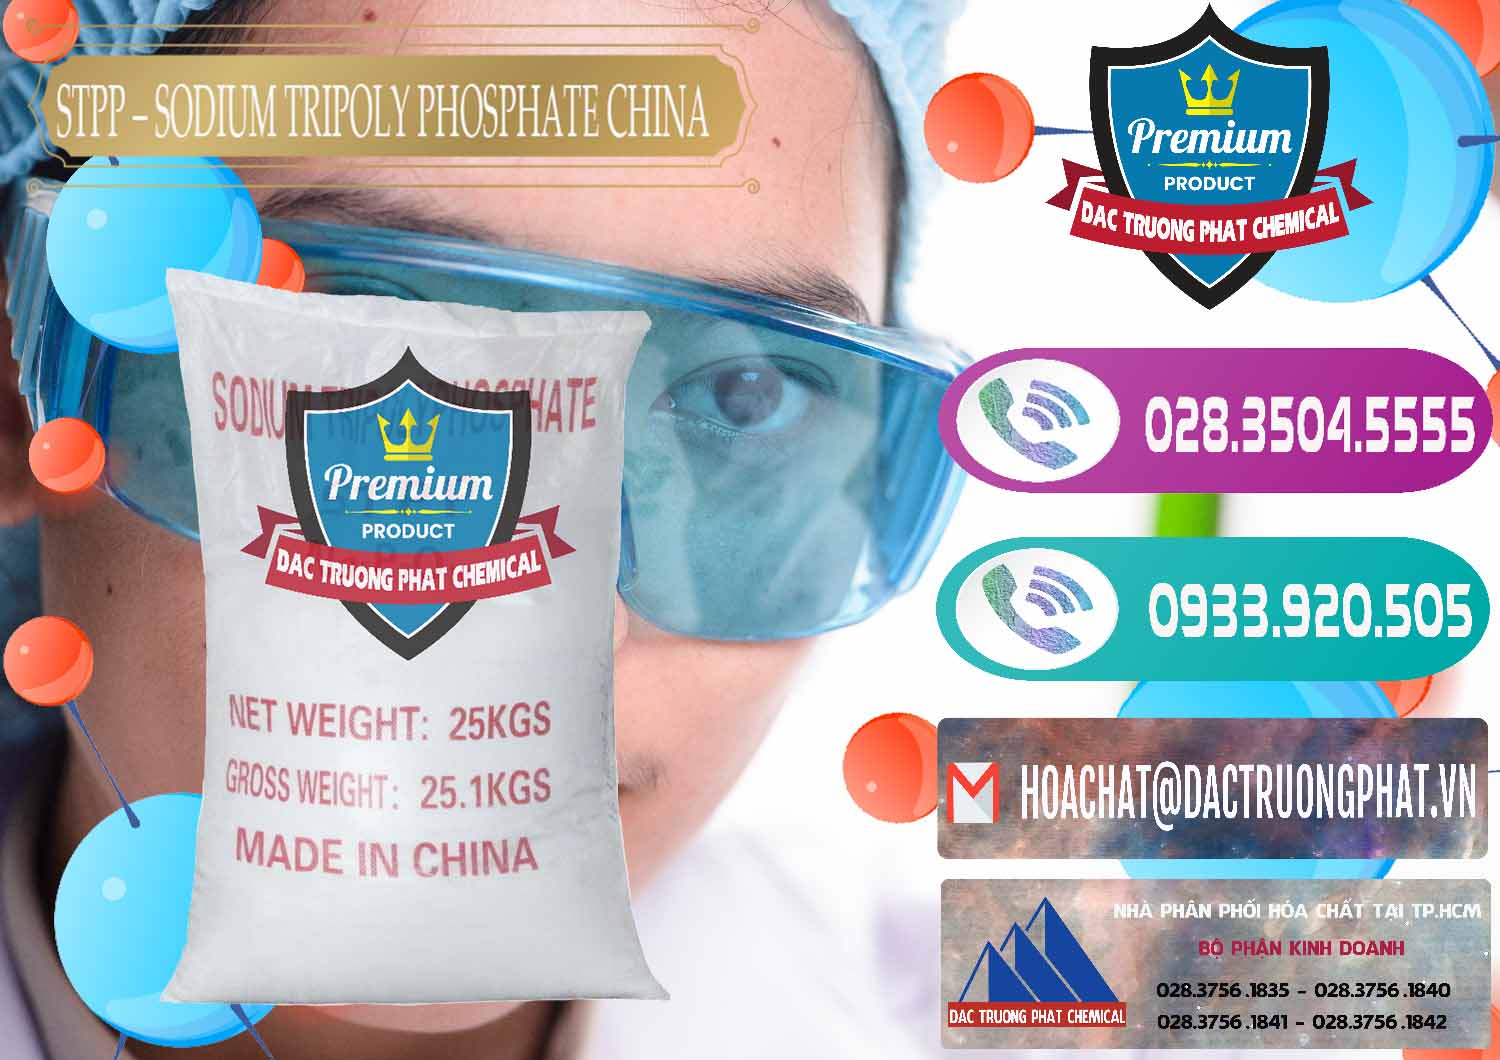 Cty chuyên bán & cung cấp Sodium Tripoly Phosphate - STPP 96% Chữ Đỏ Trung Quốc China - 0155 - Cty phân phối & cung ứng hóa chất tại TP.HCM - hoachatxulynuoc.com